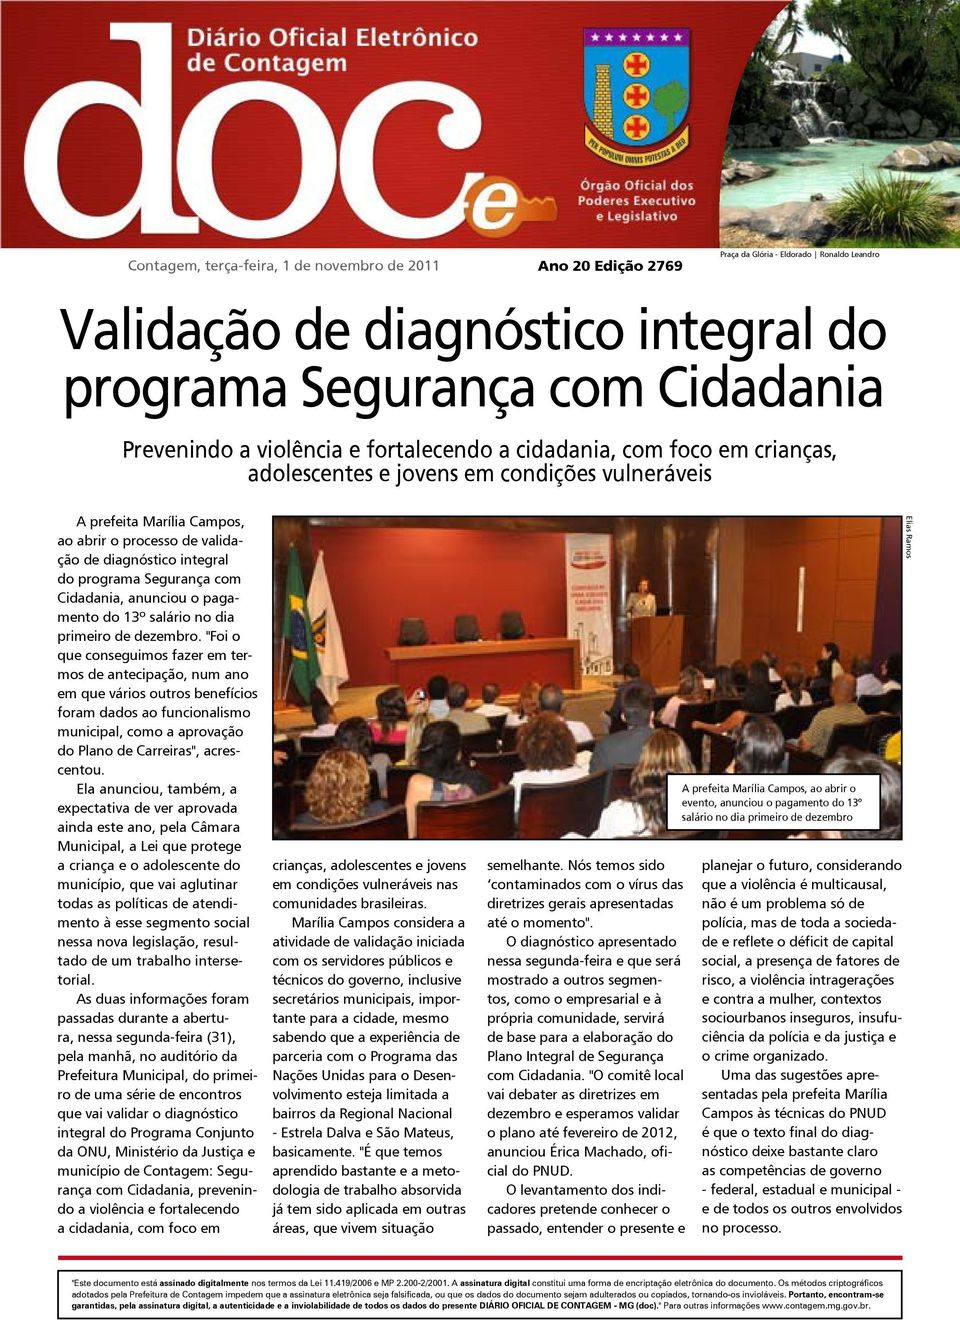 prefeita Marília Campos, ao abrir o processo de validação de diagnóstico integral do programa Segurança com Cidadania, anunciou o pagamento do 13º salário no dia primeiro de dezembro.